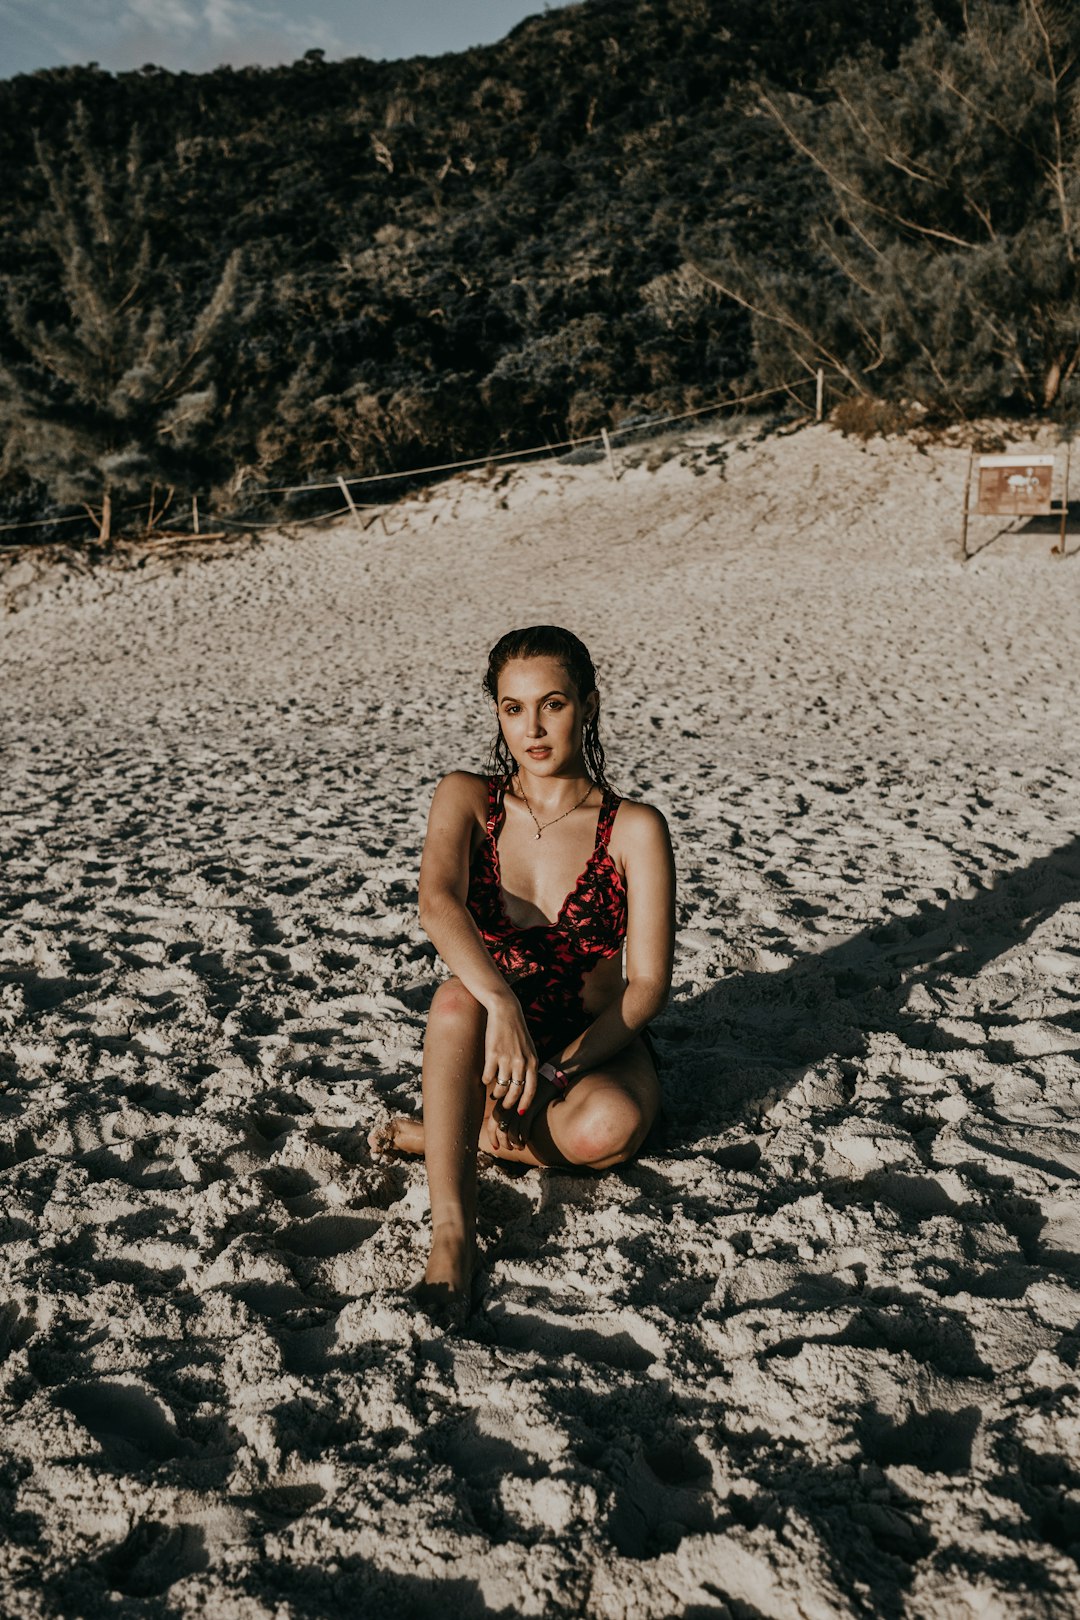 woman in black bikini sitting on white sand during daytime